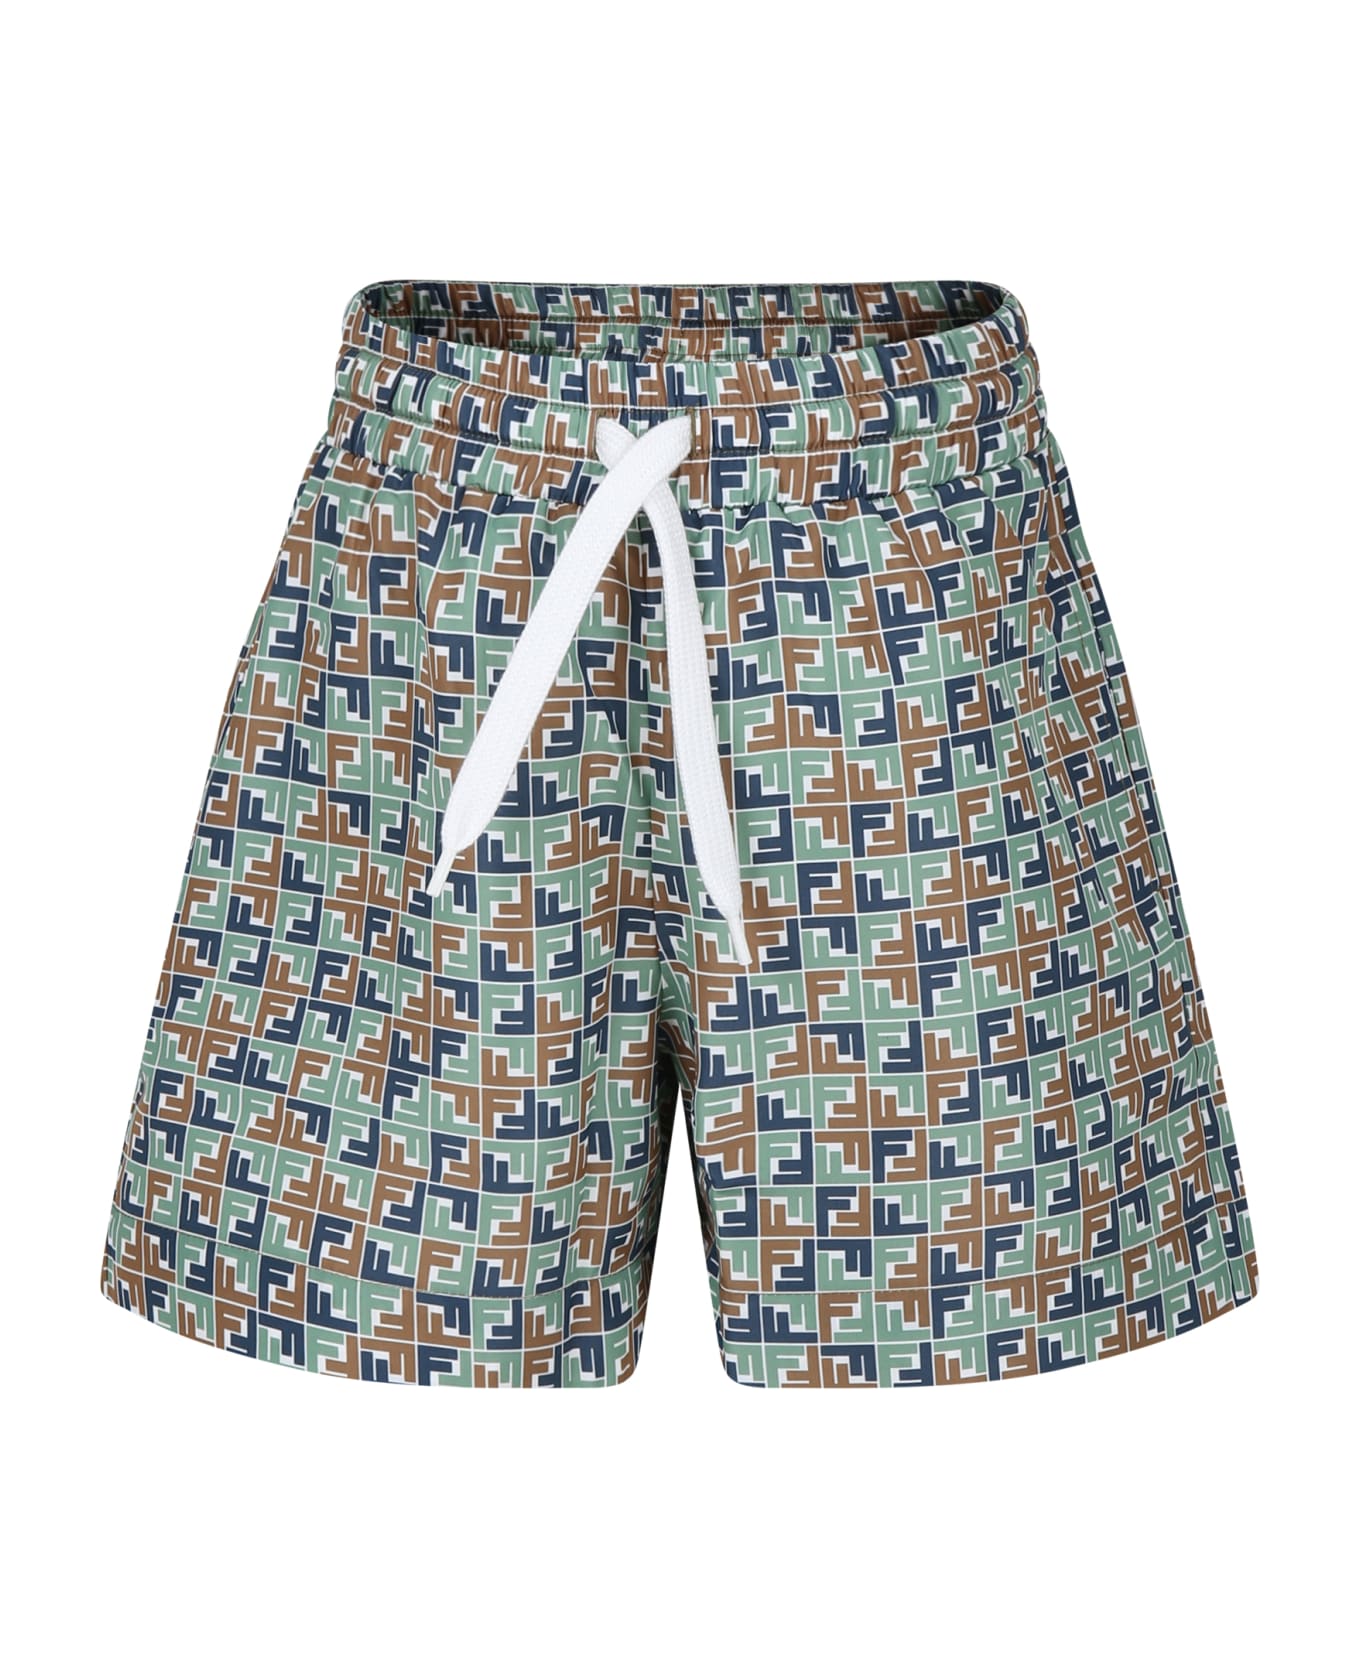 Fendi Multicolor Swim Shorts For Boy With Iconic Ff - Marrone 水着